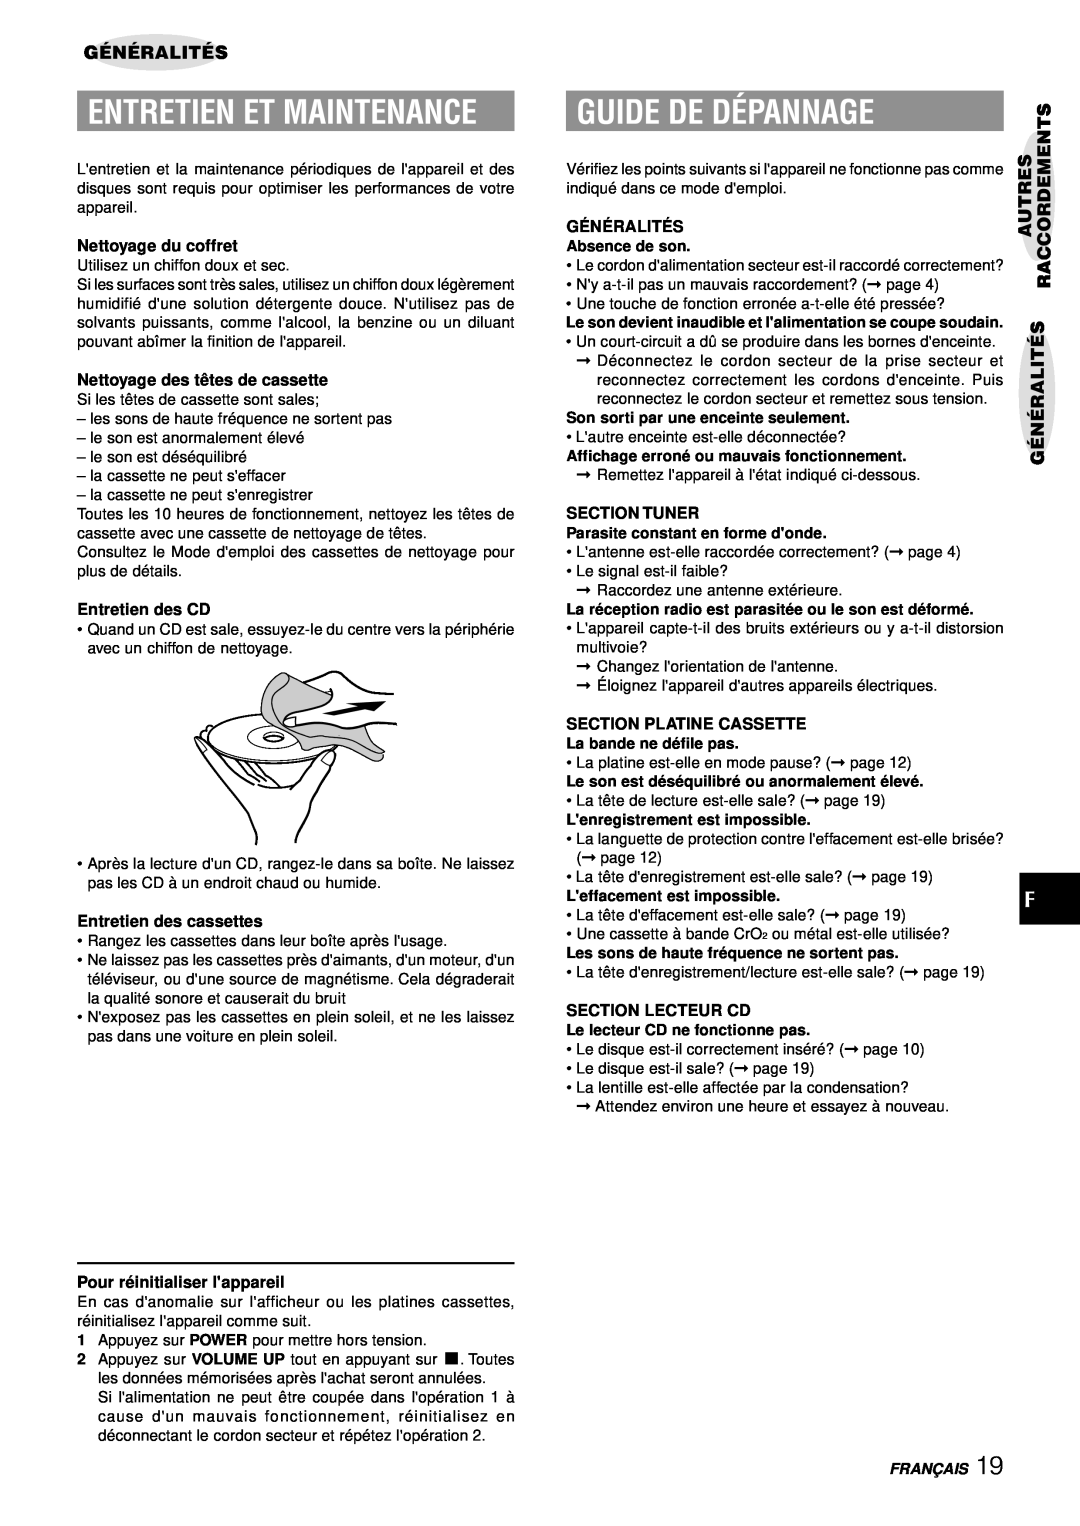 Aiwa LCX-357 Guide De Dépannage, Entretien Et Maintenance, Généralités, Nettoyage du coffret, Entretien des CD, Franç Ais 